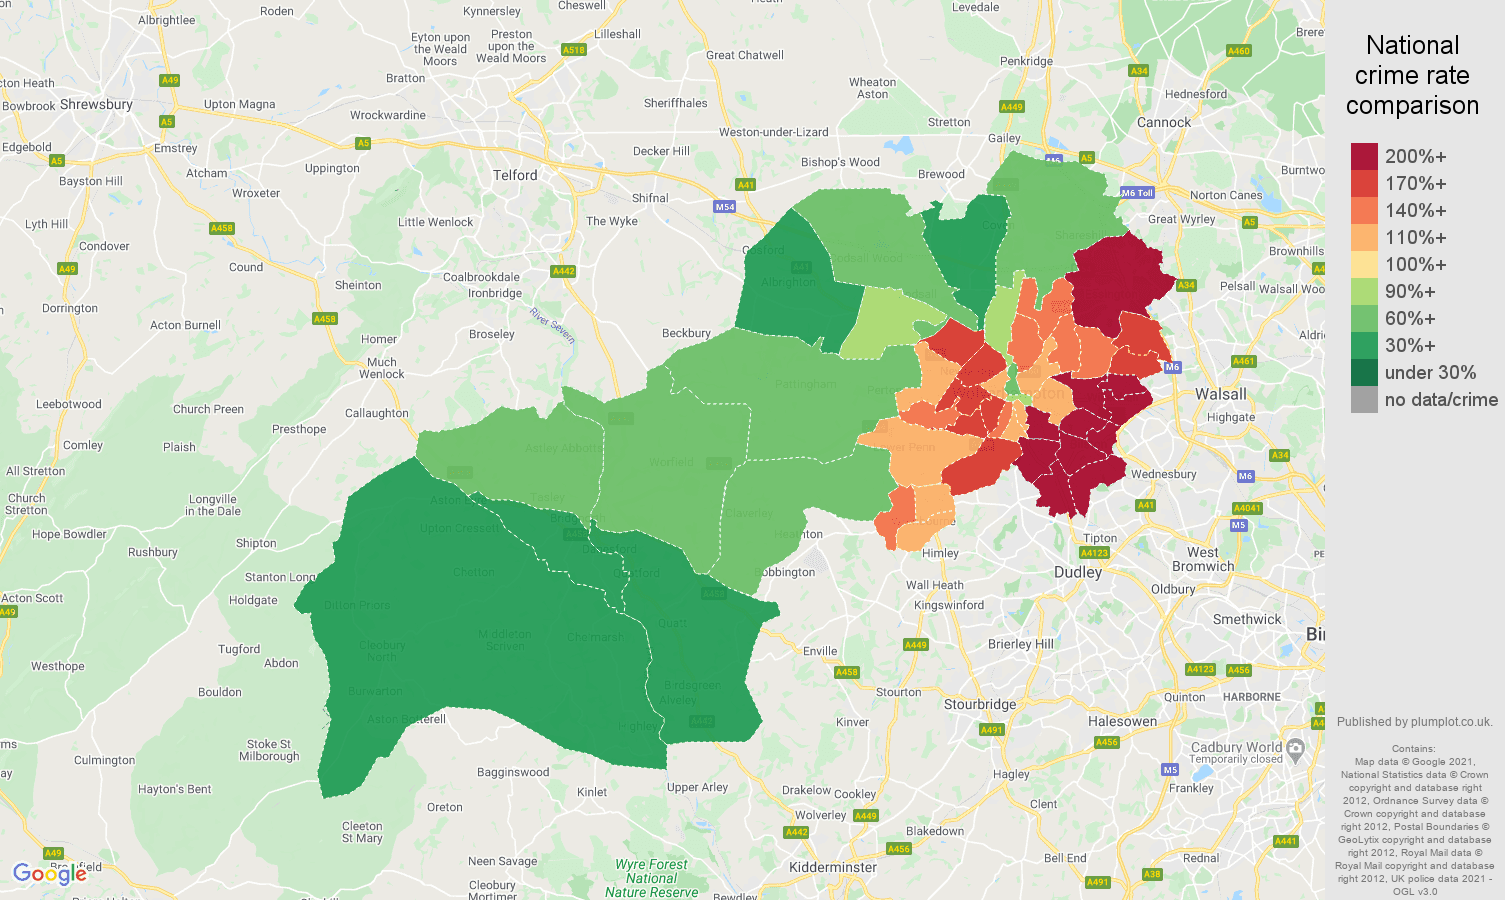 Wolverhampton vehicle crime rate comparison map